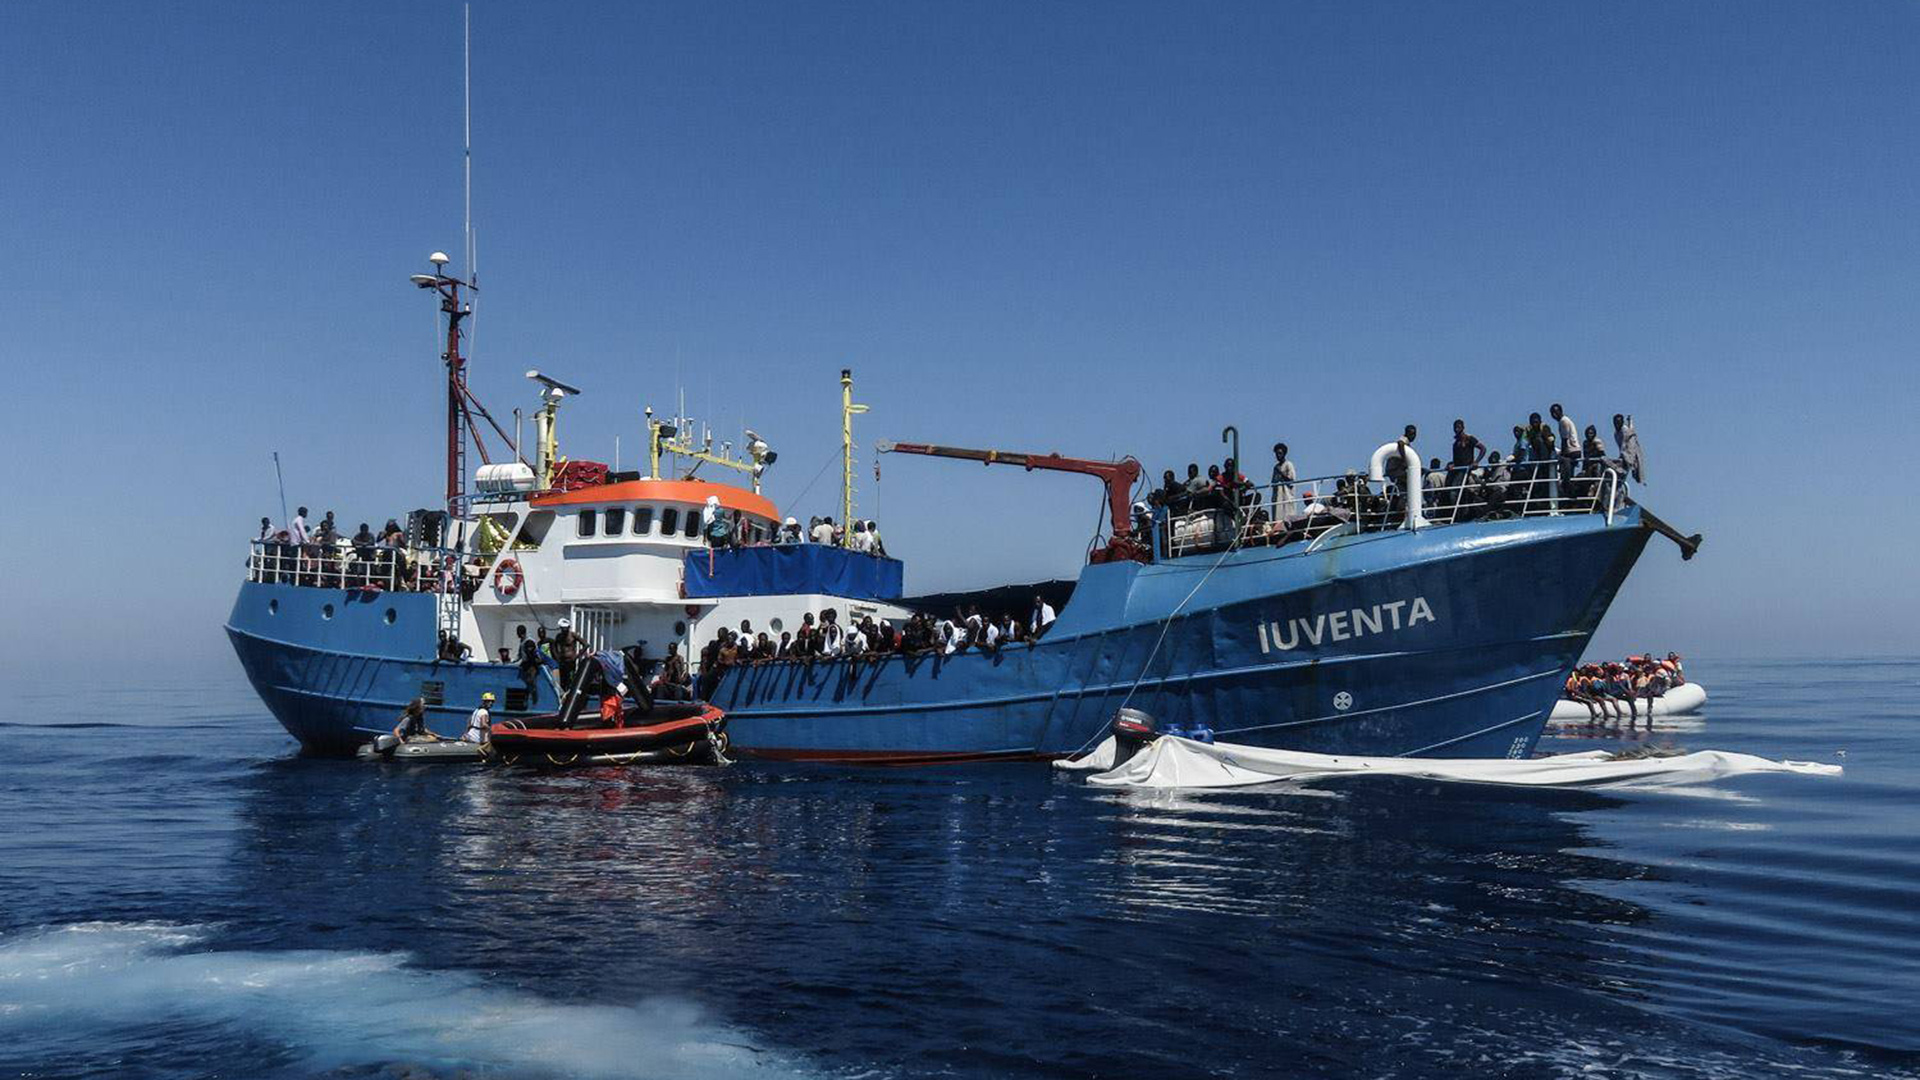 Flüchtlinge sitzen bei einem Einsatz an Bord des Schiffes «Iuventa» im Mittelmeer (Archivbild vom 15.09.2017). | picture alliance / -/IUVENTA Jug